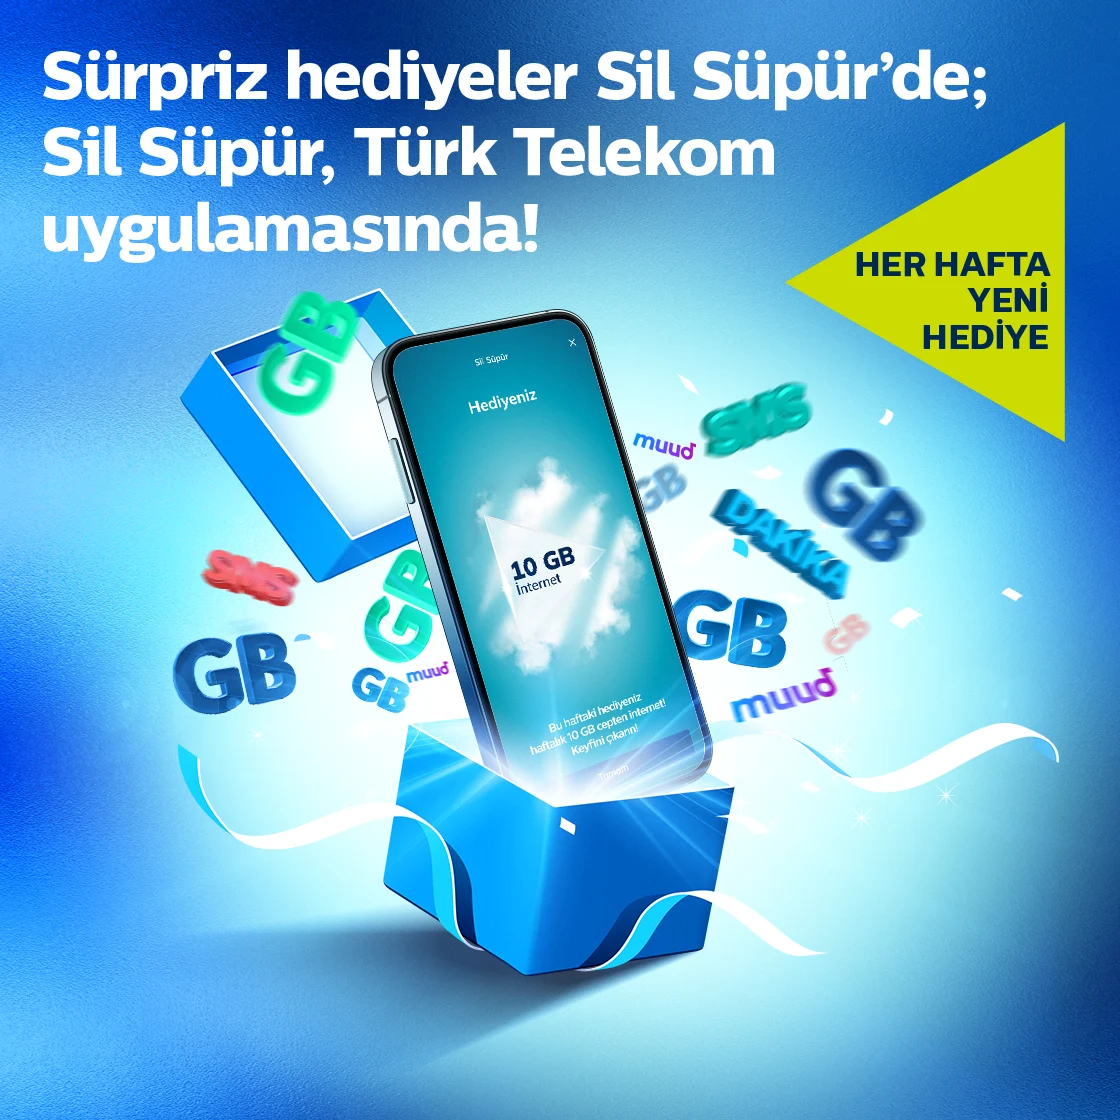 Sürpriz hediyeler sil süpürde sil süpür, türk telekom uygulamasında yazısının yanında kutudan çıkan bir telefon ve üzerinde 10G